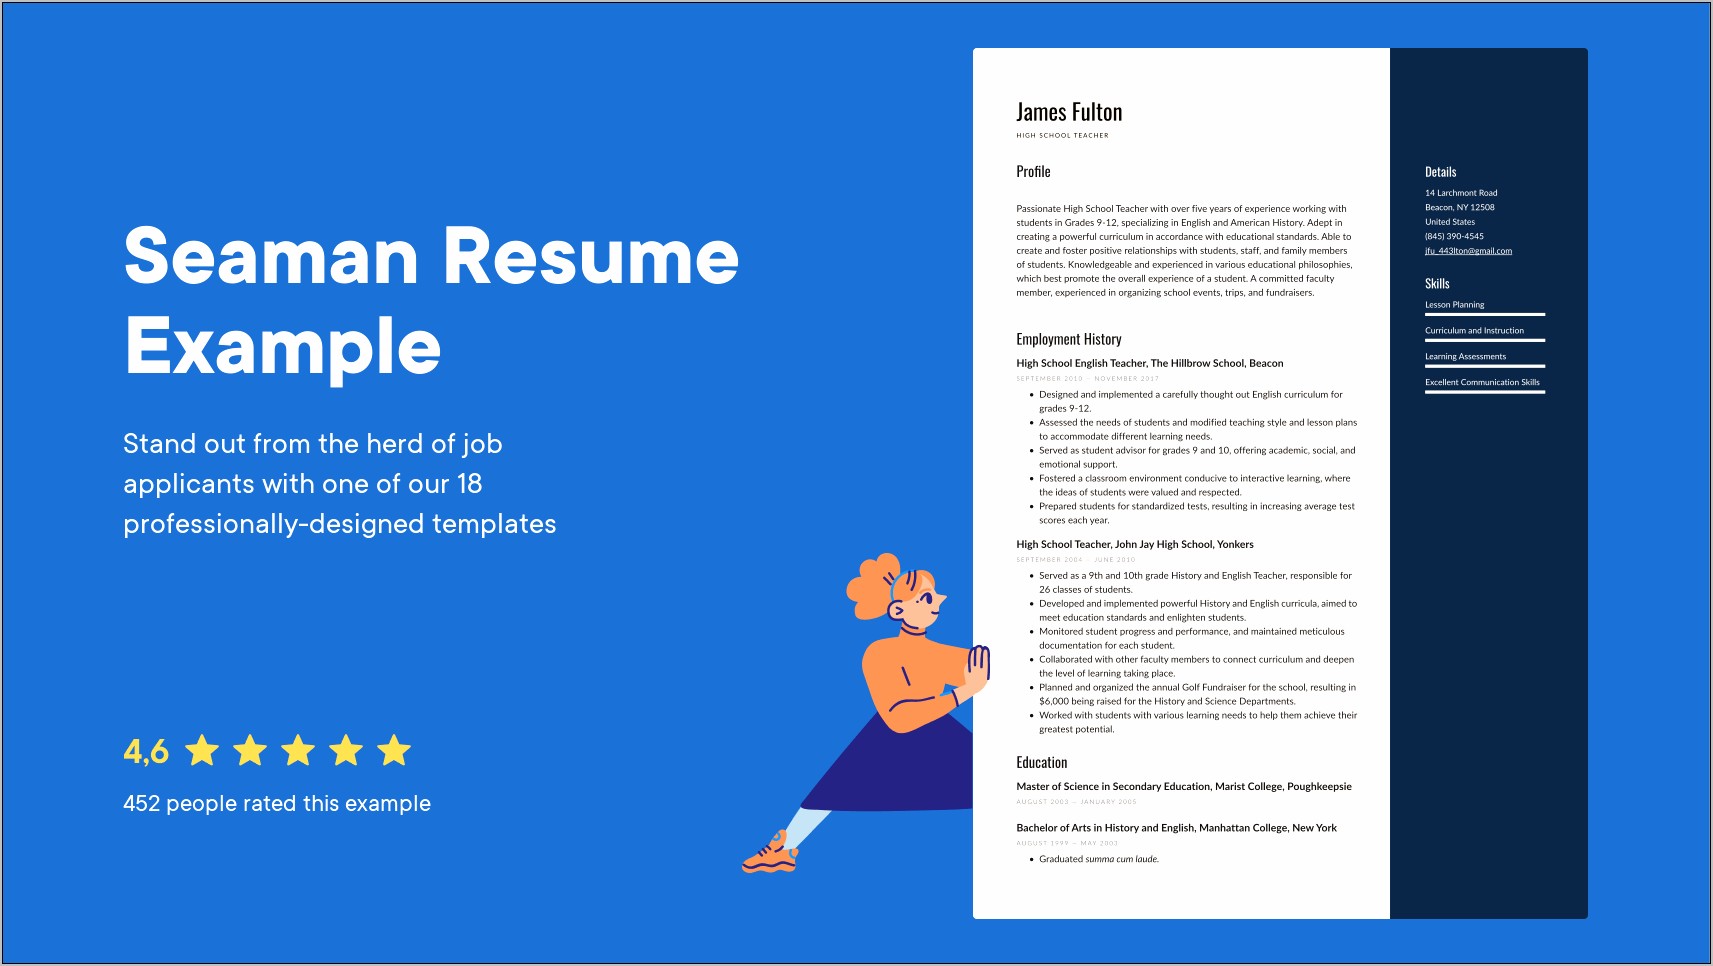 Applicant Resume Sample Filipino Pdf